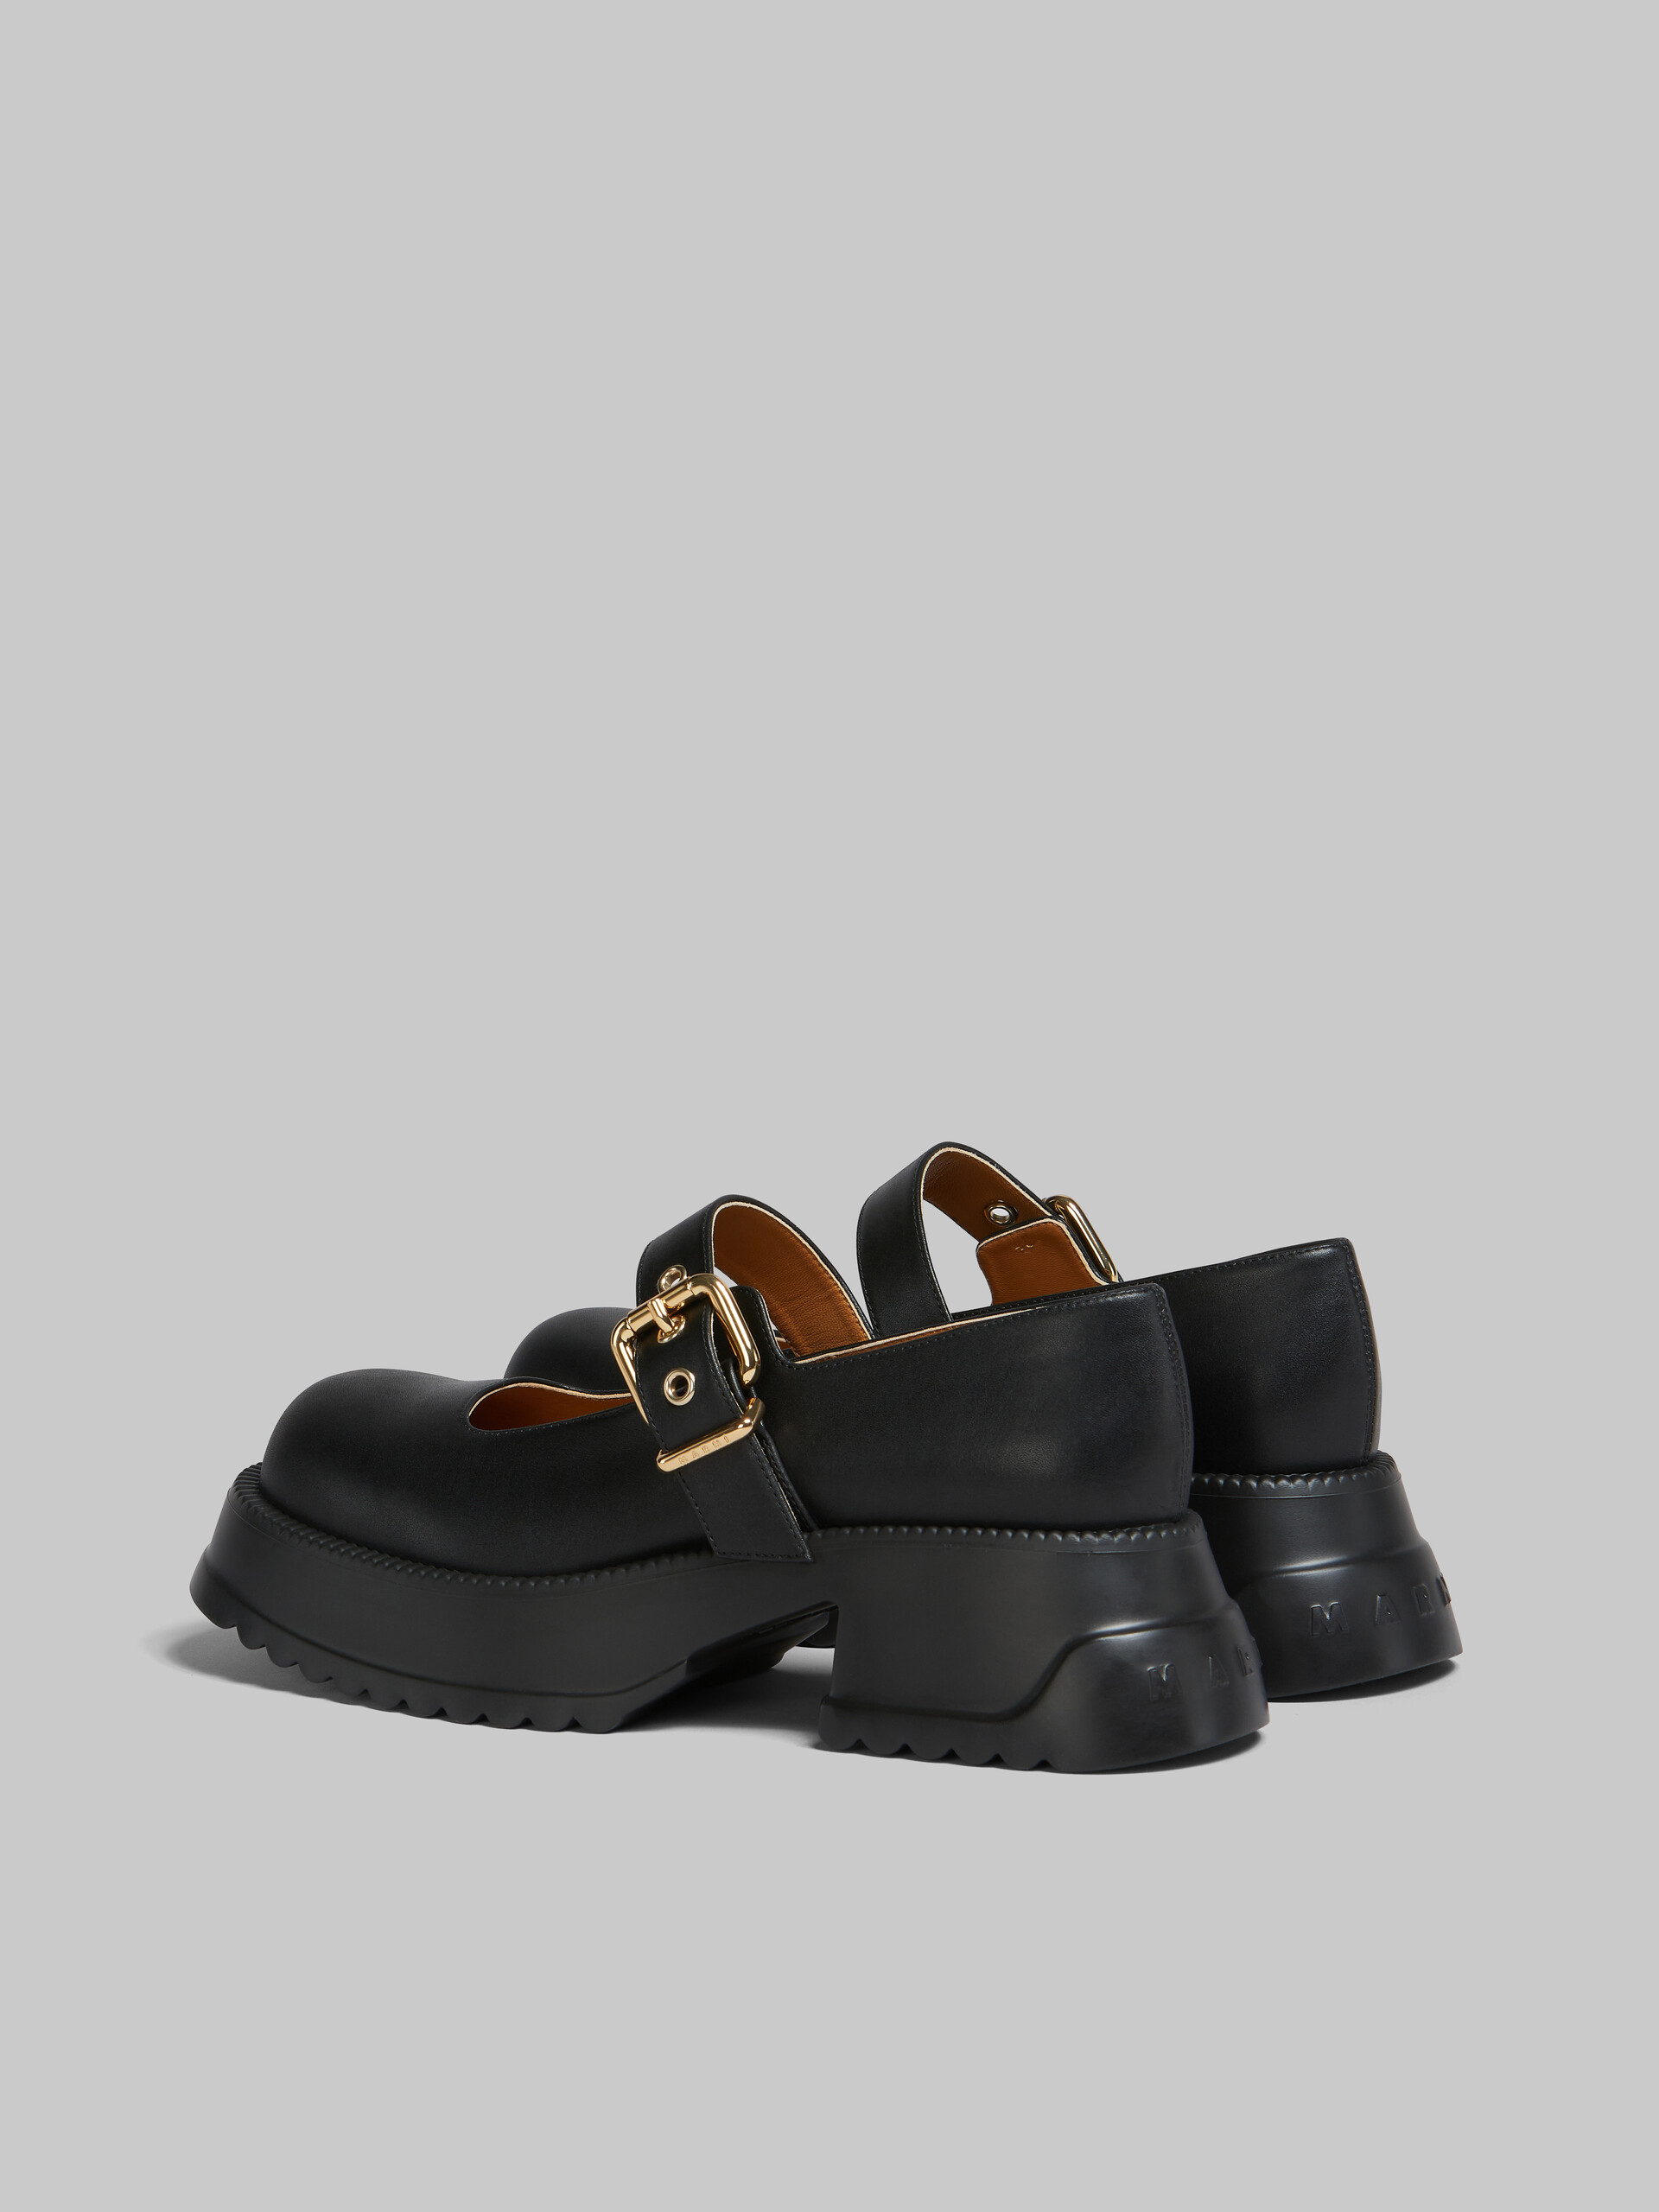 Zapatos estilo Mary Jane de piel negra con suela de plataforma - Sneakers - Image 3